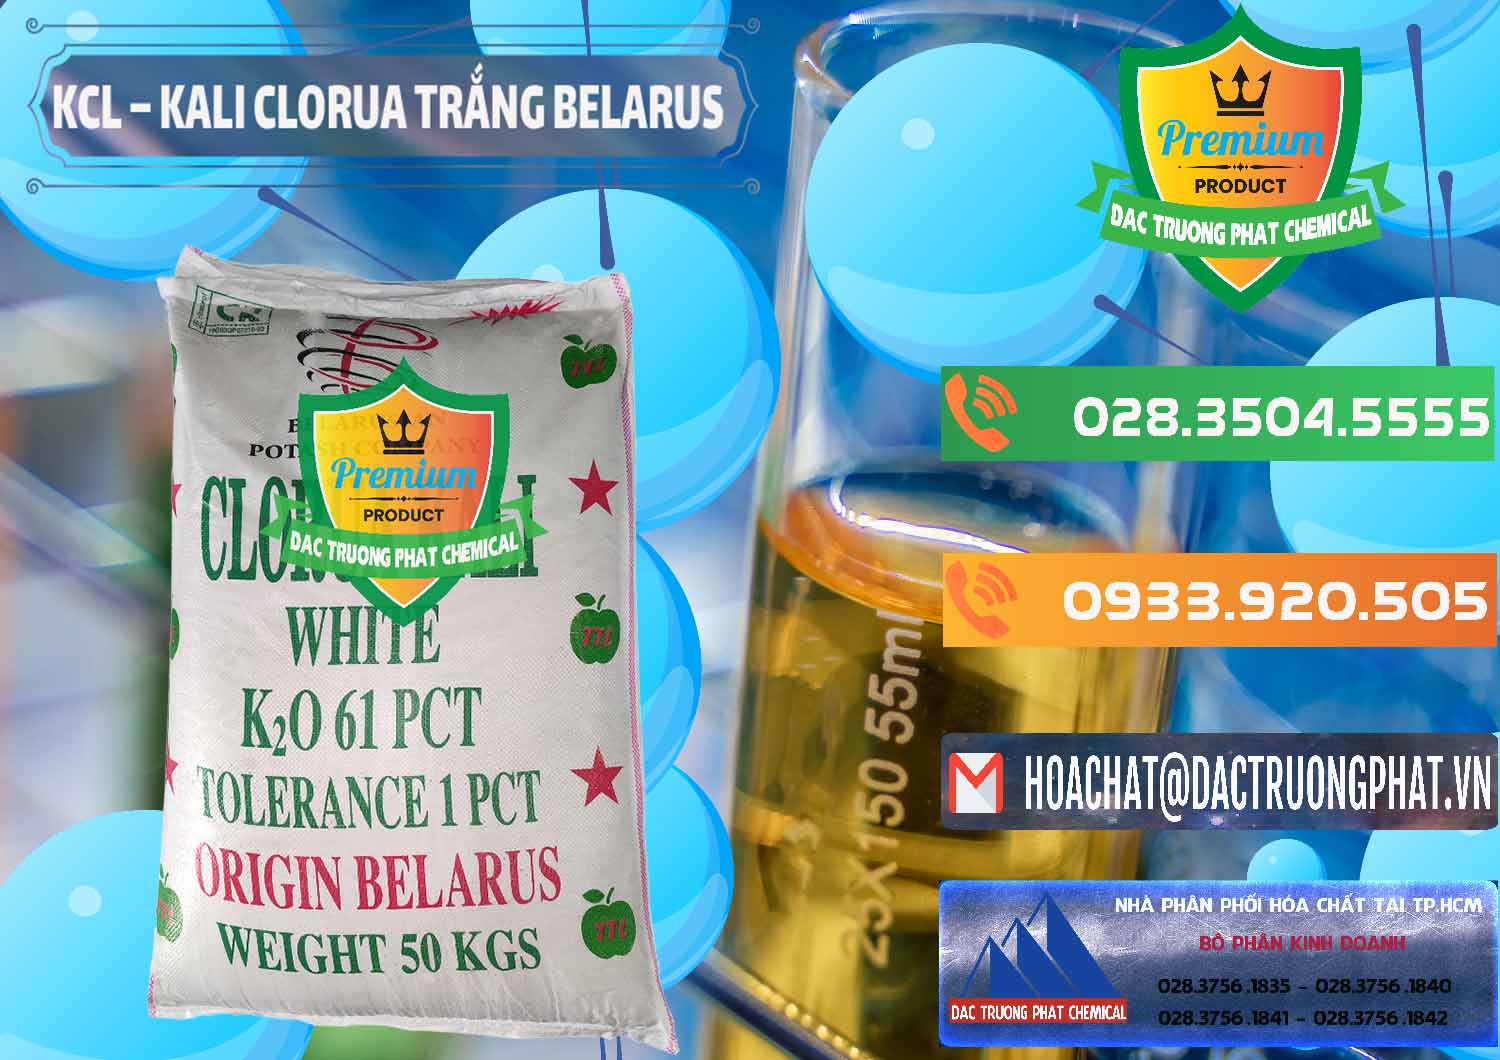 Cty bán & phân phối KCL – Kali Clorua Trắng Belarus - 0085 - Nhà phân phối và cung ứng hóa chất tại TP.HCM - hoachatxulynuoc.com.vn